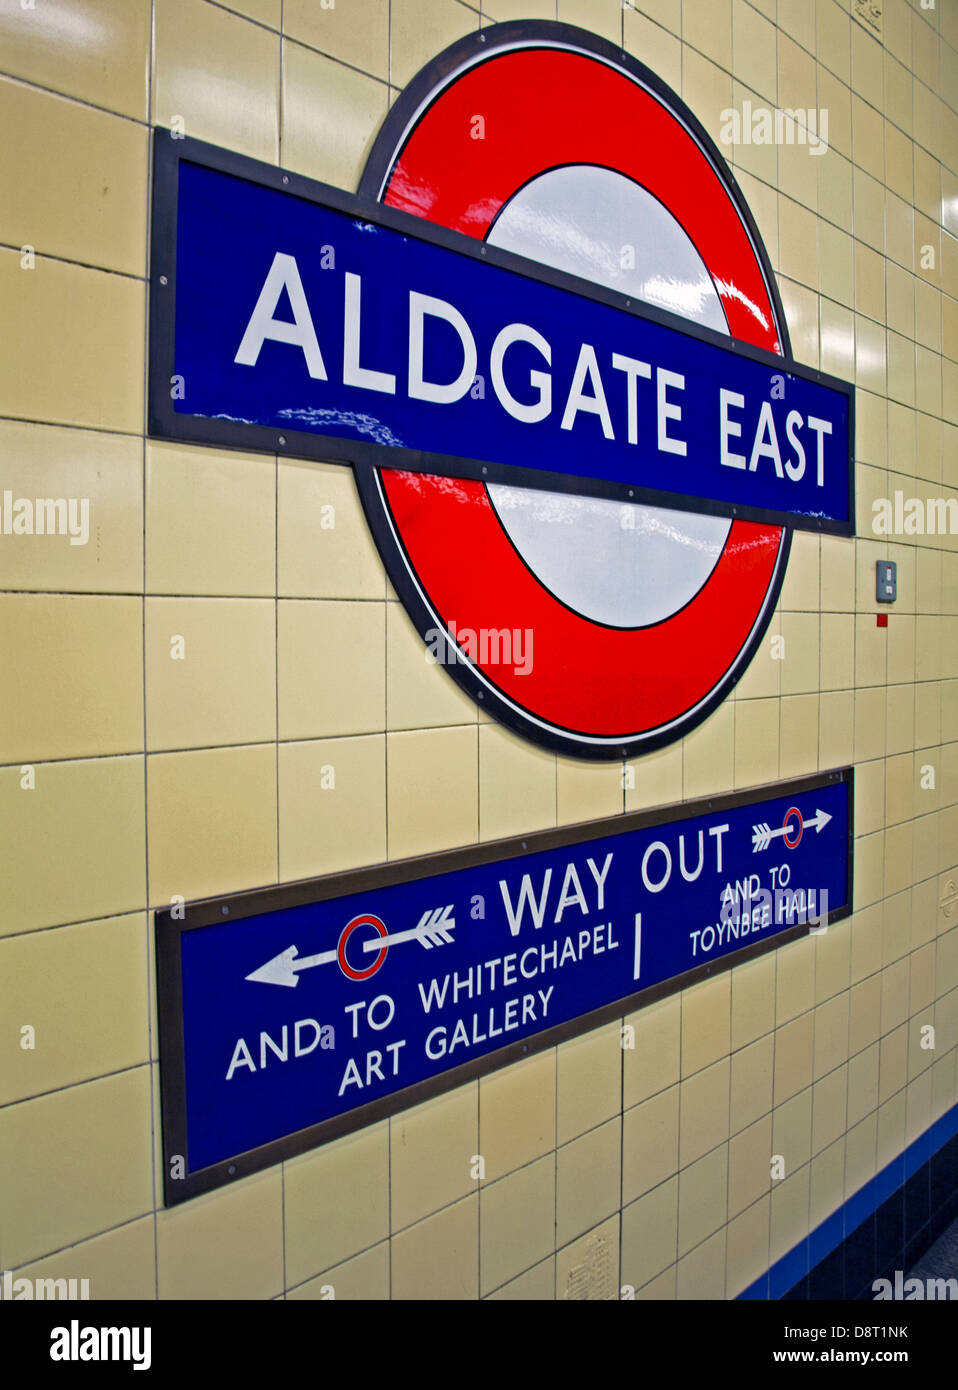 Signe de métro à la station Aldgate East, Londres, Angleterre, Royaume-Uni Banque D'Images